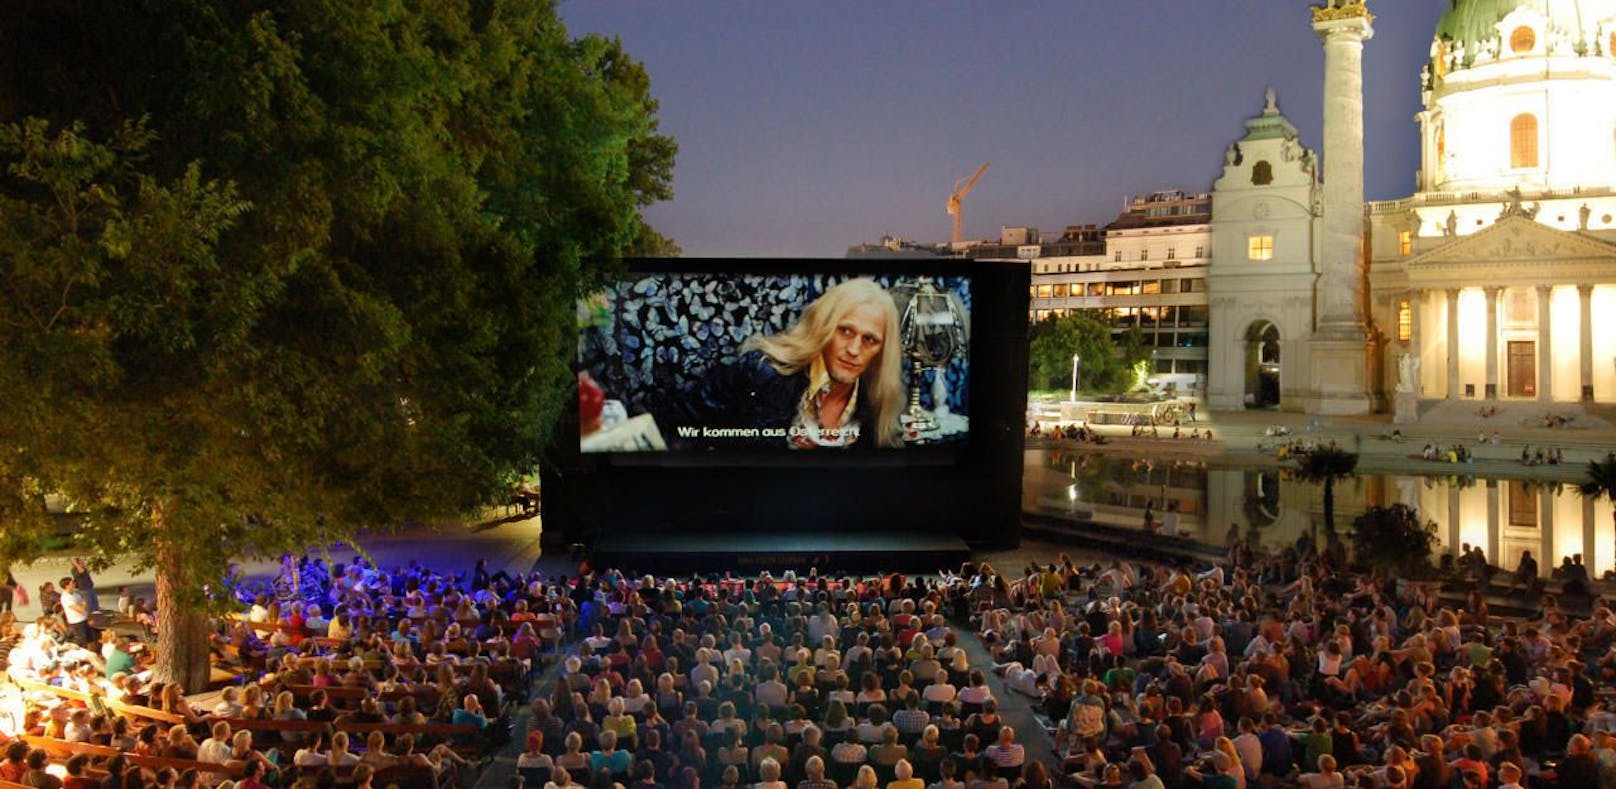 Am 29. Juni startet wieder das Open-Air-Kino vor der Karlskirche.